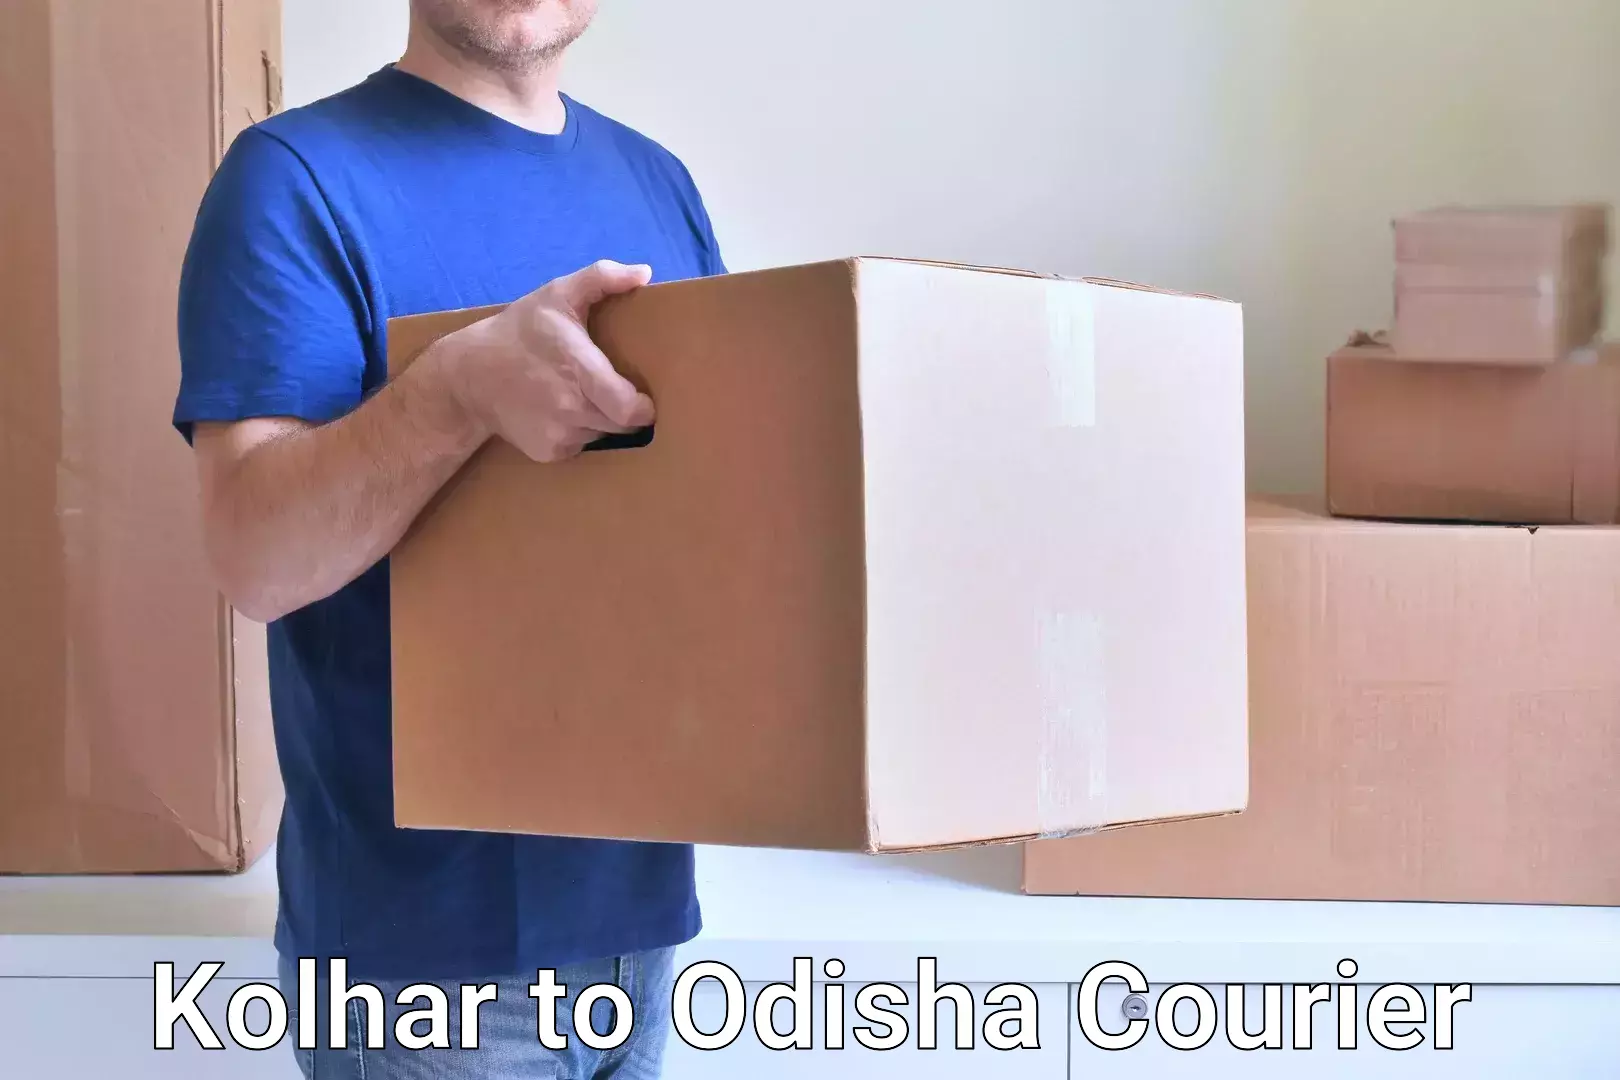 Efficient parcel tracking Kolhar to Udala